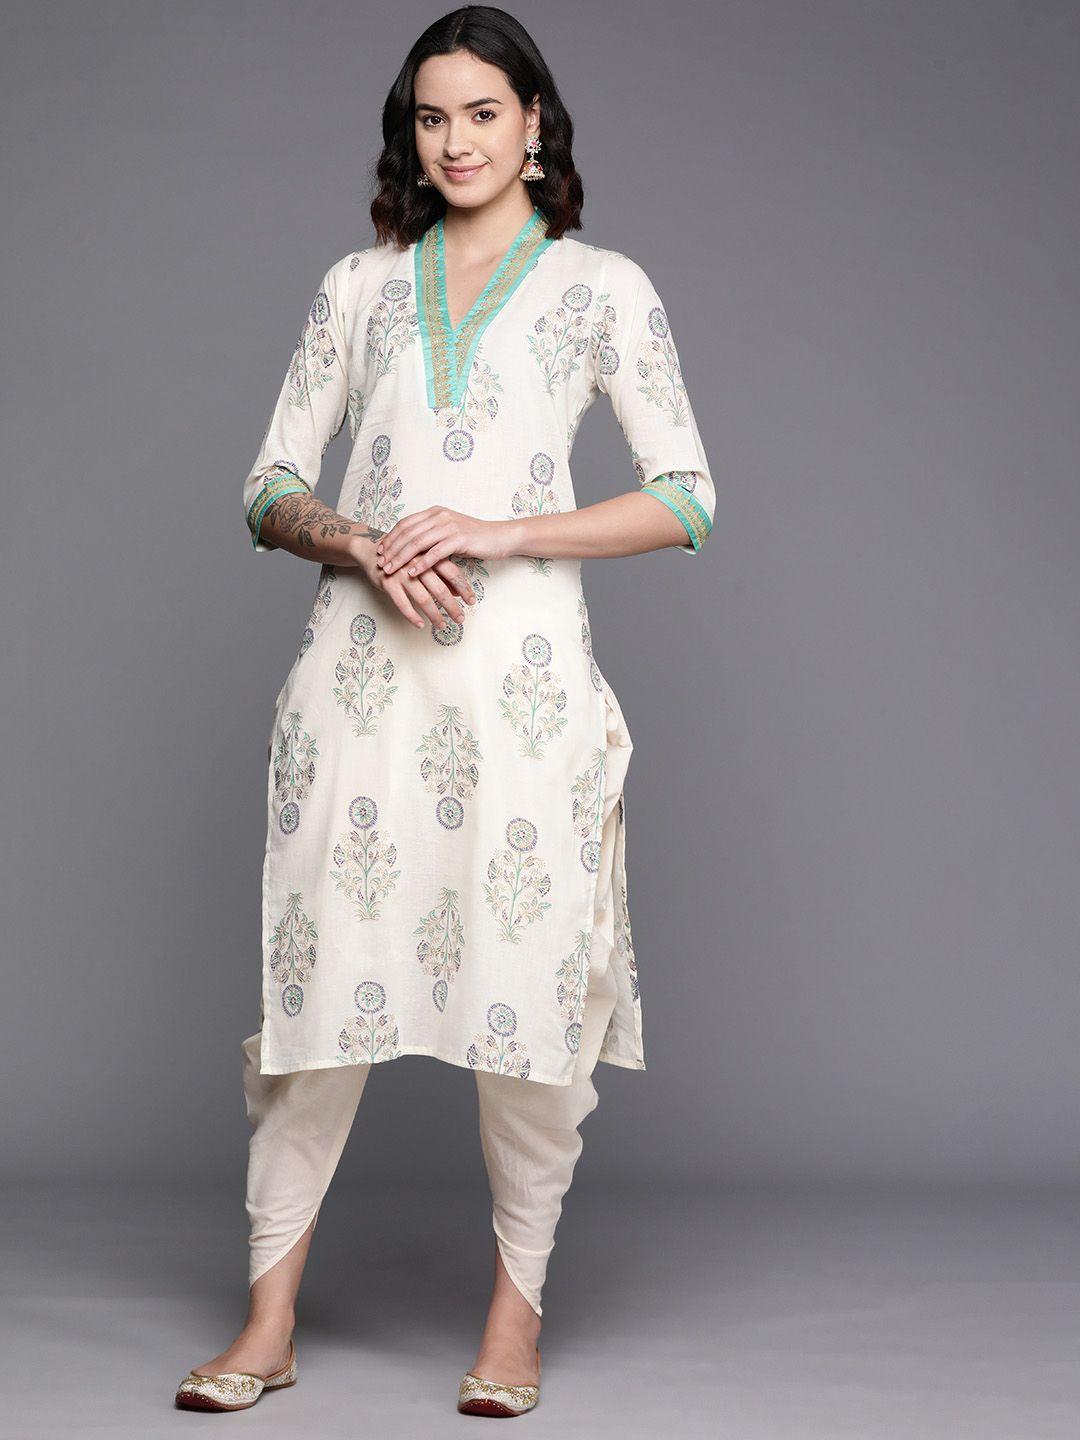 ahalyaa floral printed regular pure cotton kurta with dhoti pants